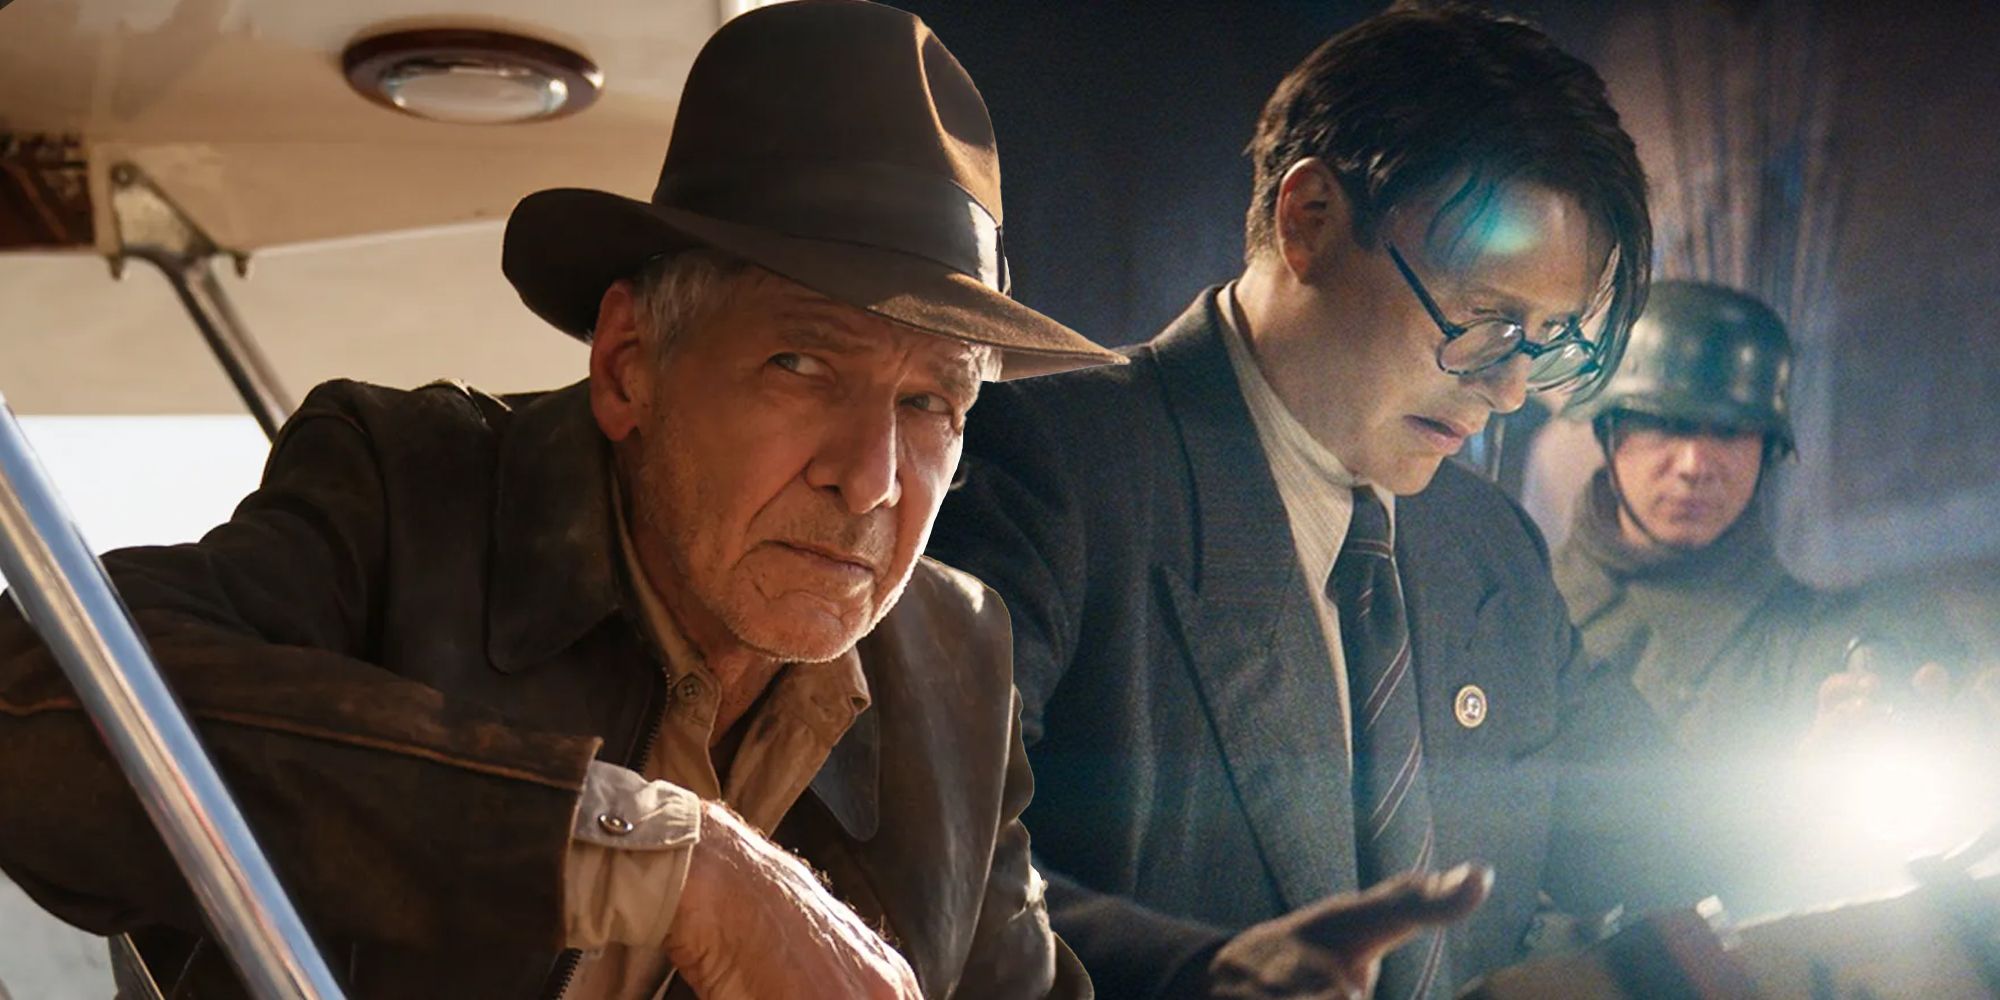 Indiana Jones and de-aged Voller